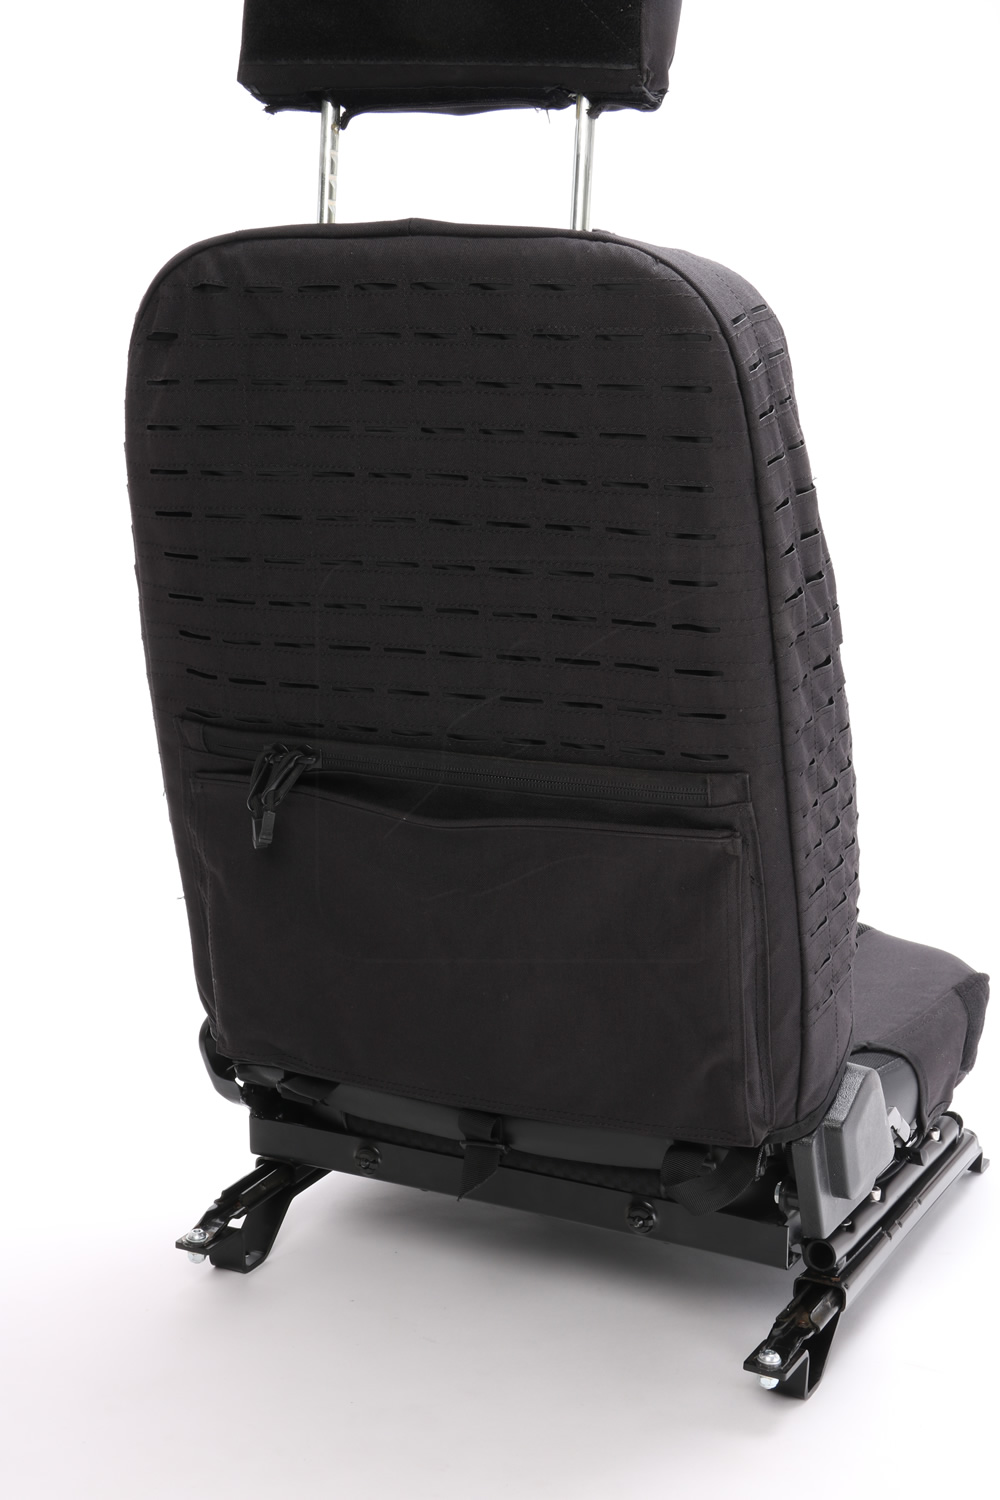 Sitzbezüge wasserdicht Defender Td4 3. Reihe (schwarz)